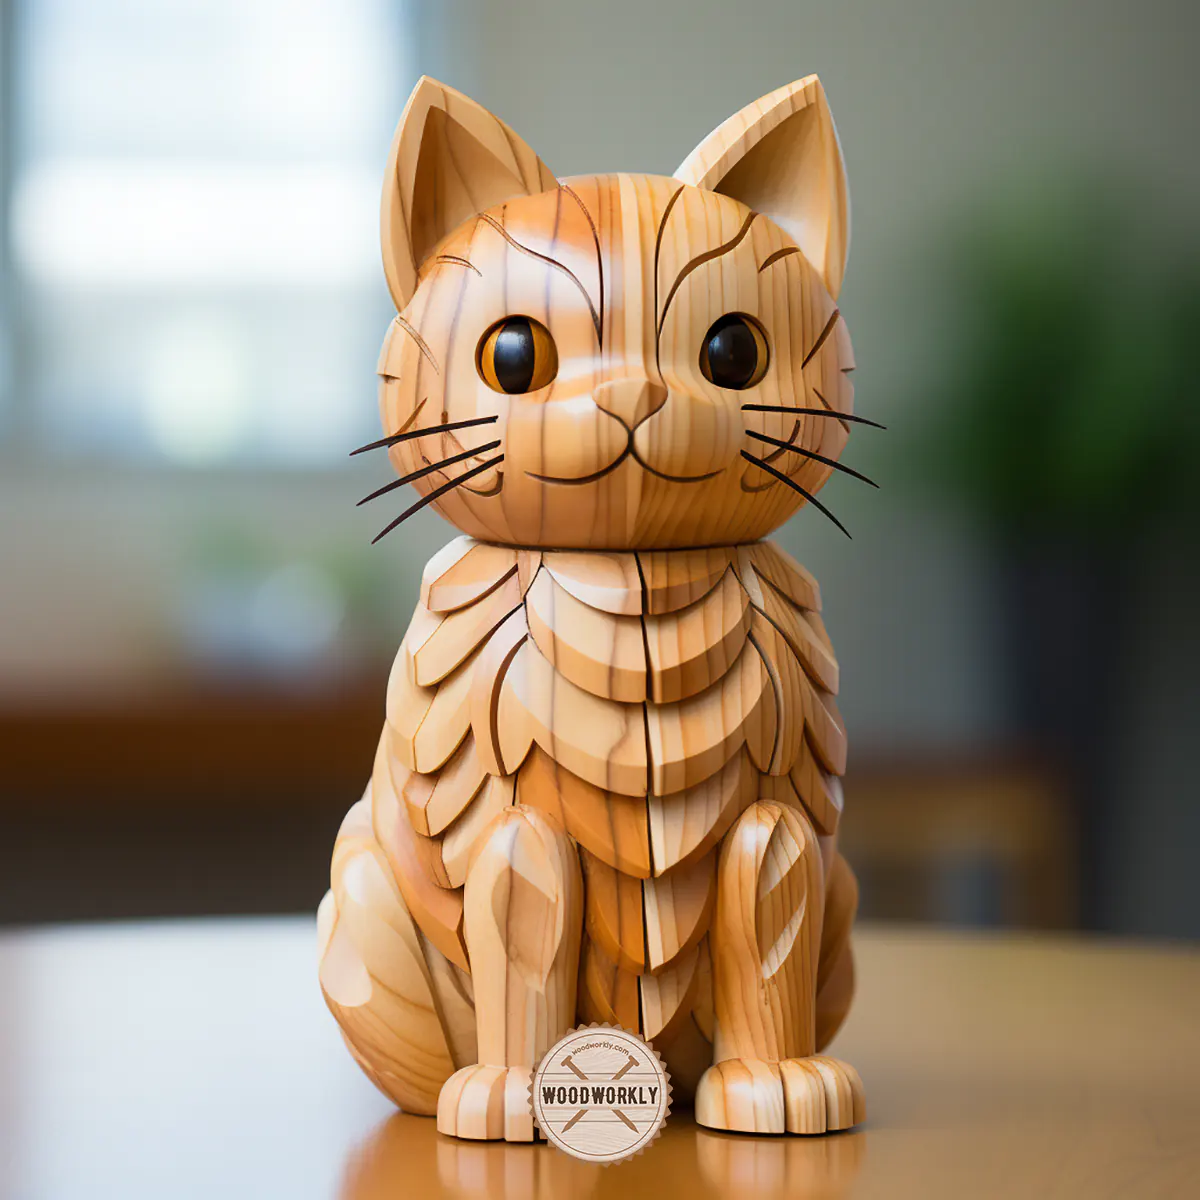 Cedar wood carved cat figure